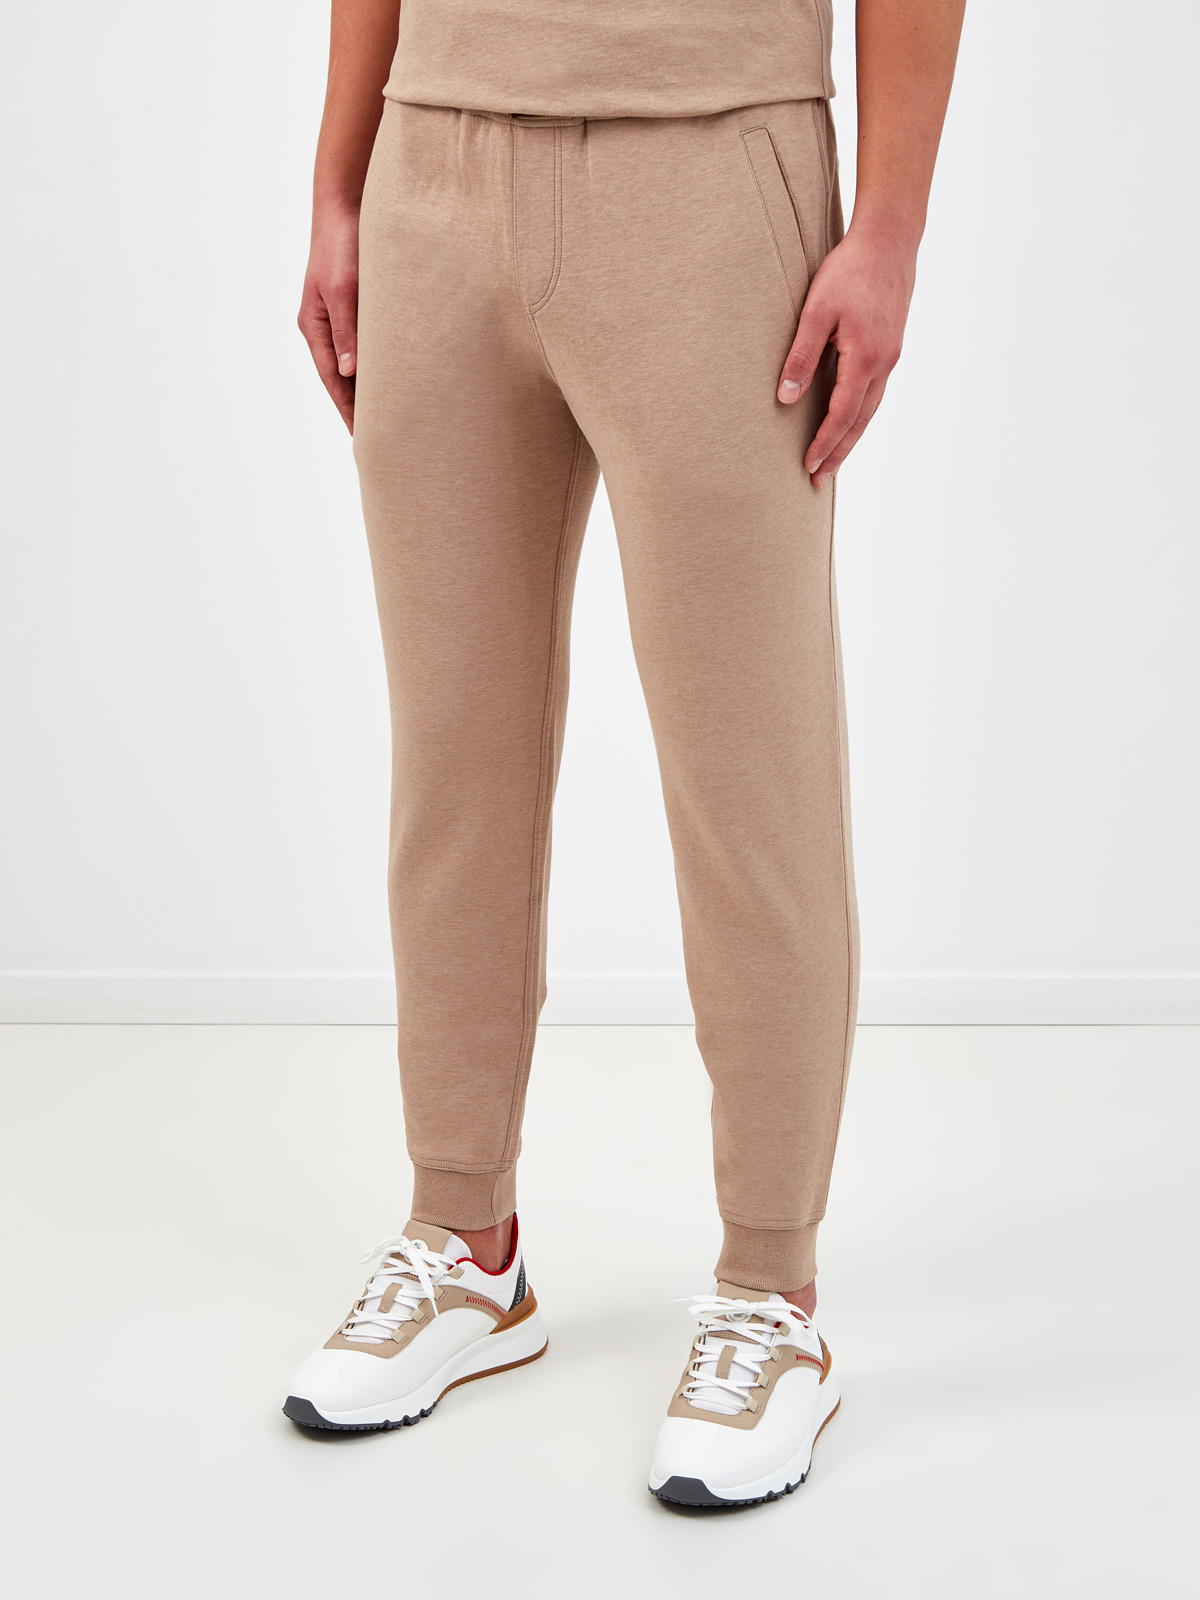 Хлопковые джоггеры Travelwear с контрастной отделкой пояса BRUNELLO CUCINELLI, цвет бежевый, размер 52;48 - фото 3